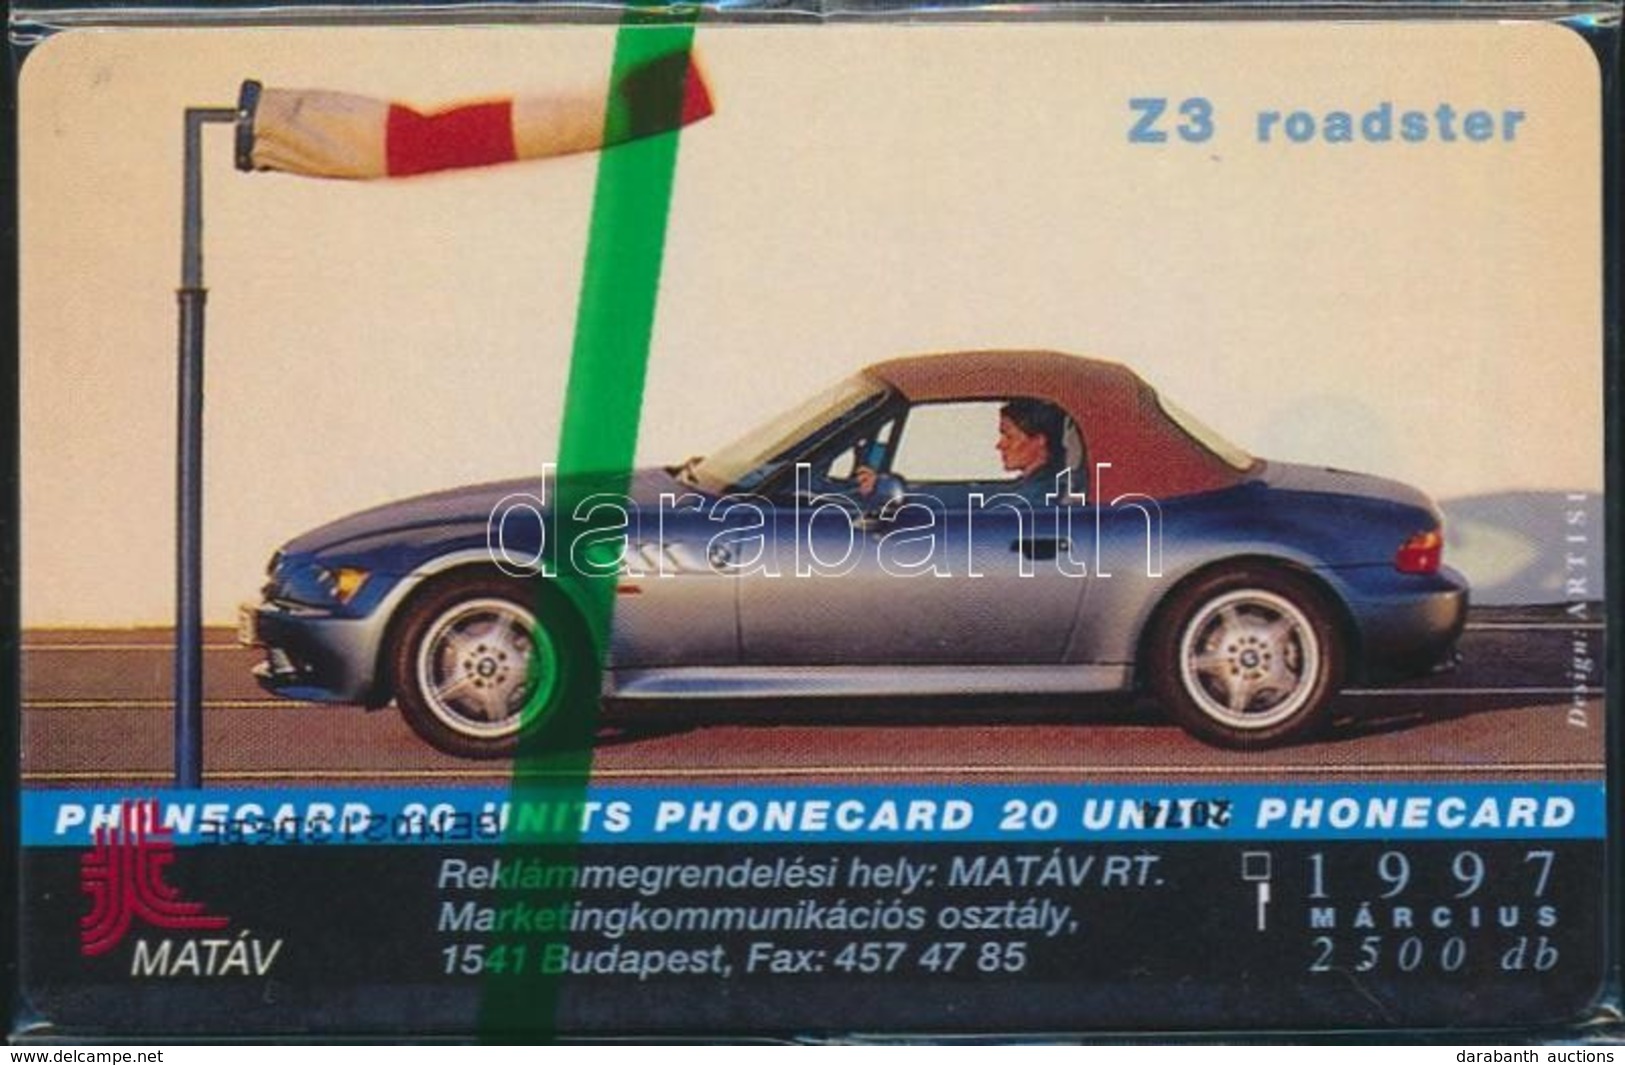 1999 BMW Z3 Roadster Használatlan Telefonkártya, Bontatlan Csomagolásban. Csak 2500 Db! / Unused Phone Card - Ohne Zuordnung